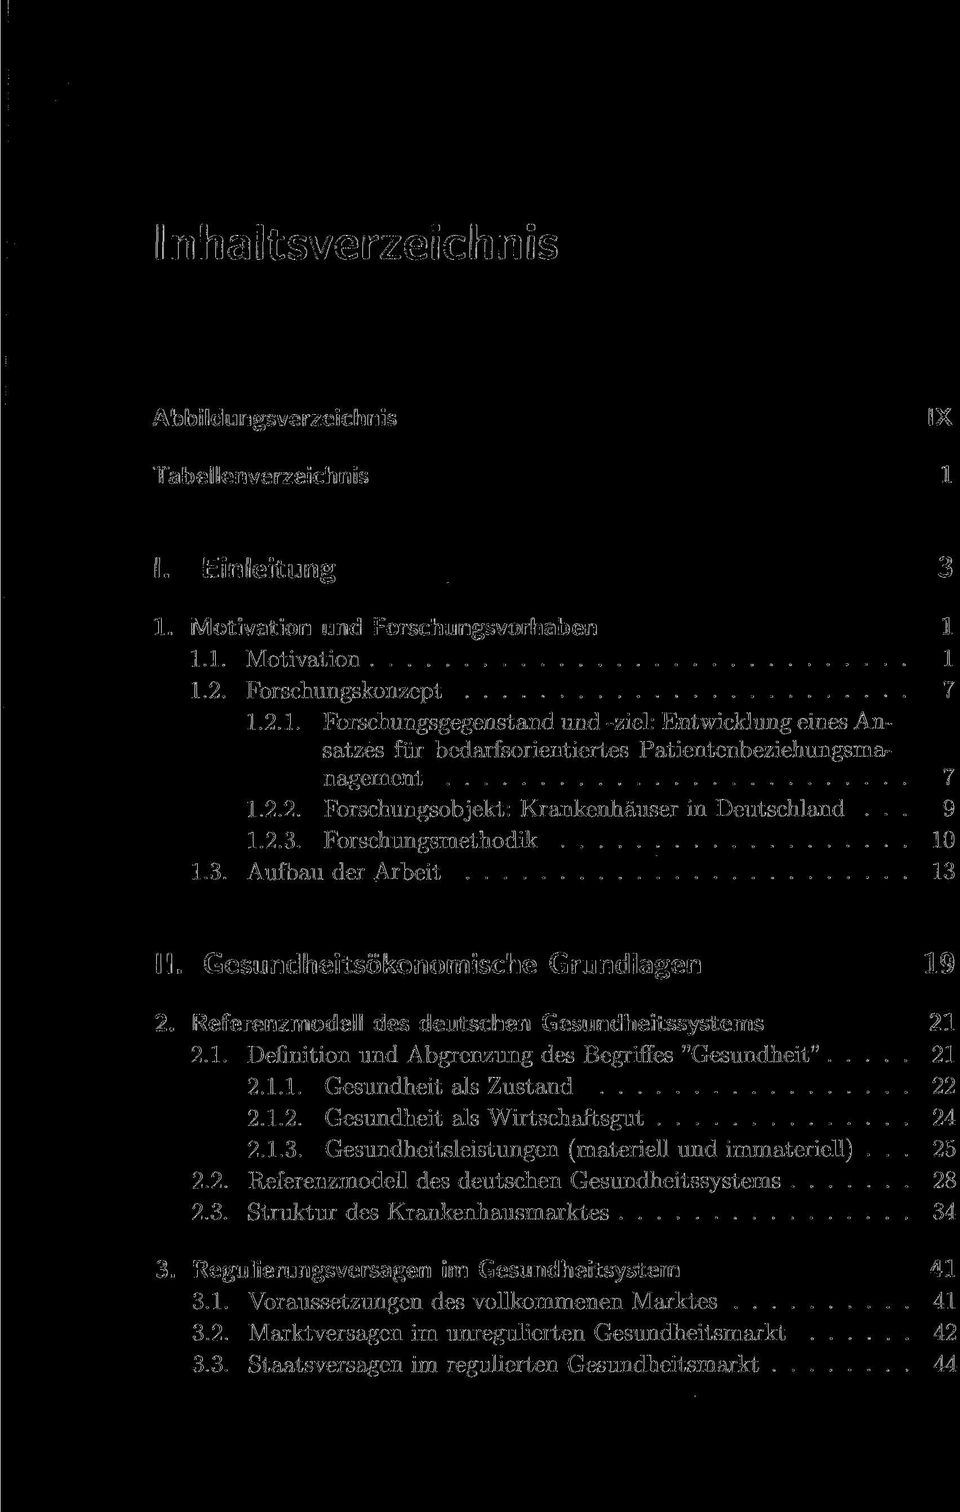 Referenzmodell des deutschen Gesundheitssystems 21 2.1. Definition und Abgrenzung des Begriffes "Gesundheit" 21 2.1.1. Gesundheit als Zustand 22 2.1.2. Gesundheit als Wirtschaftsgut 24 2.1.3.